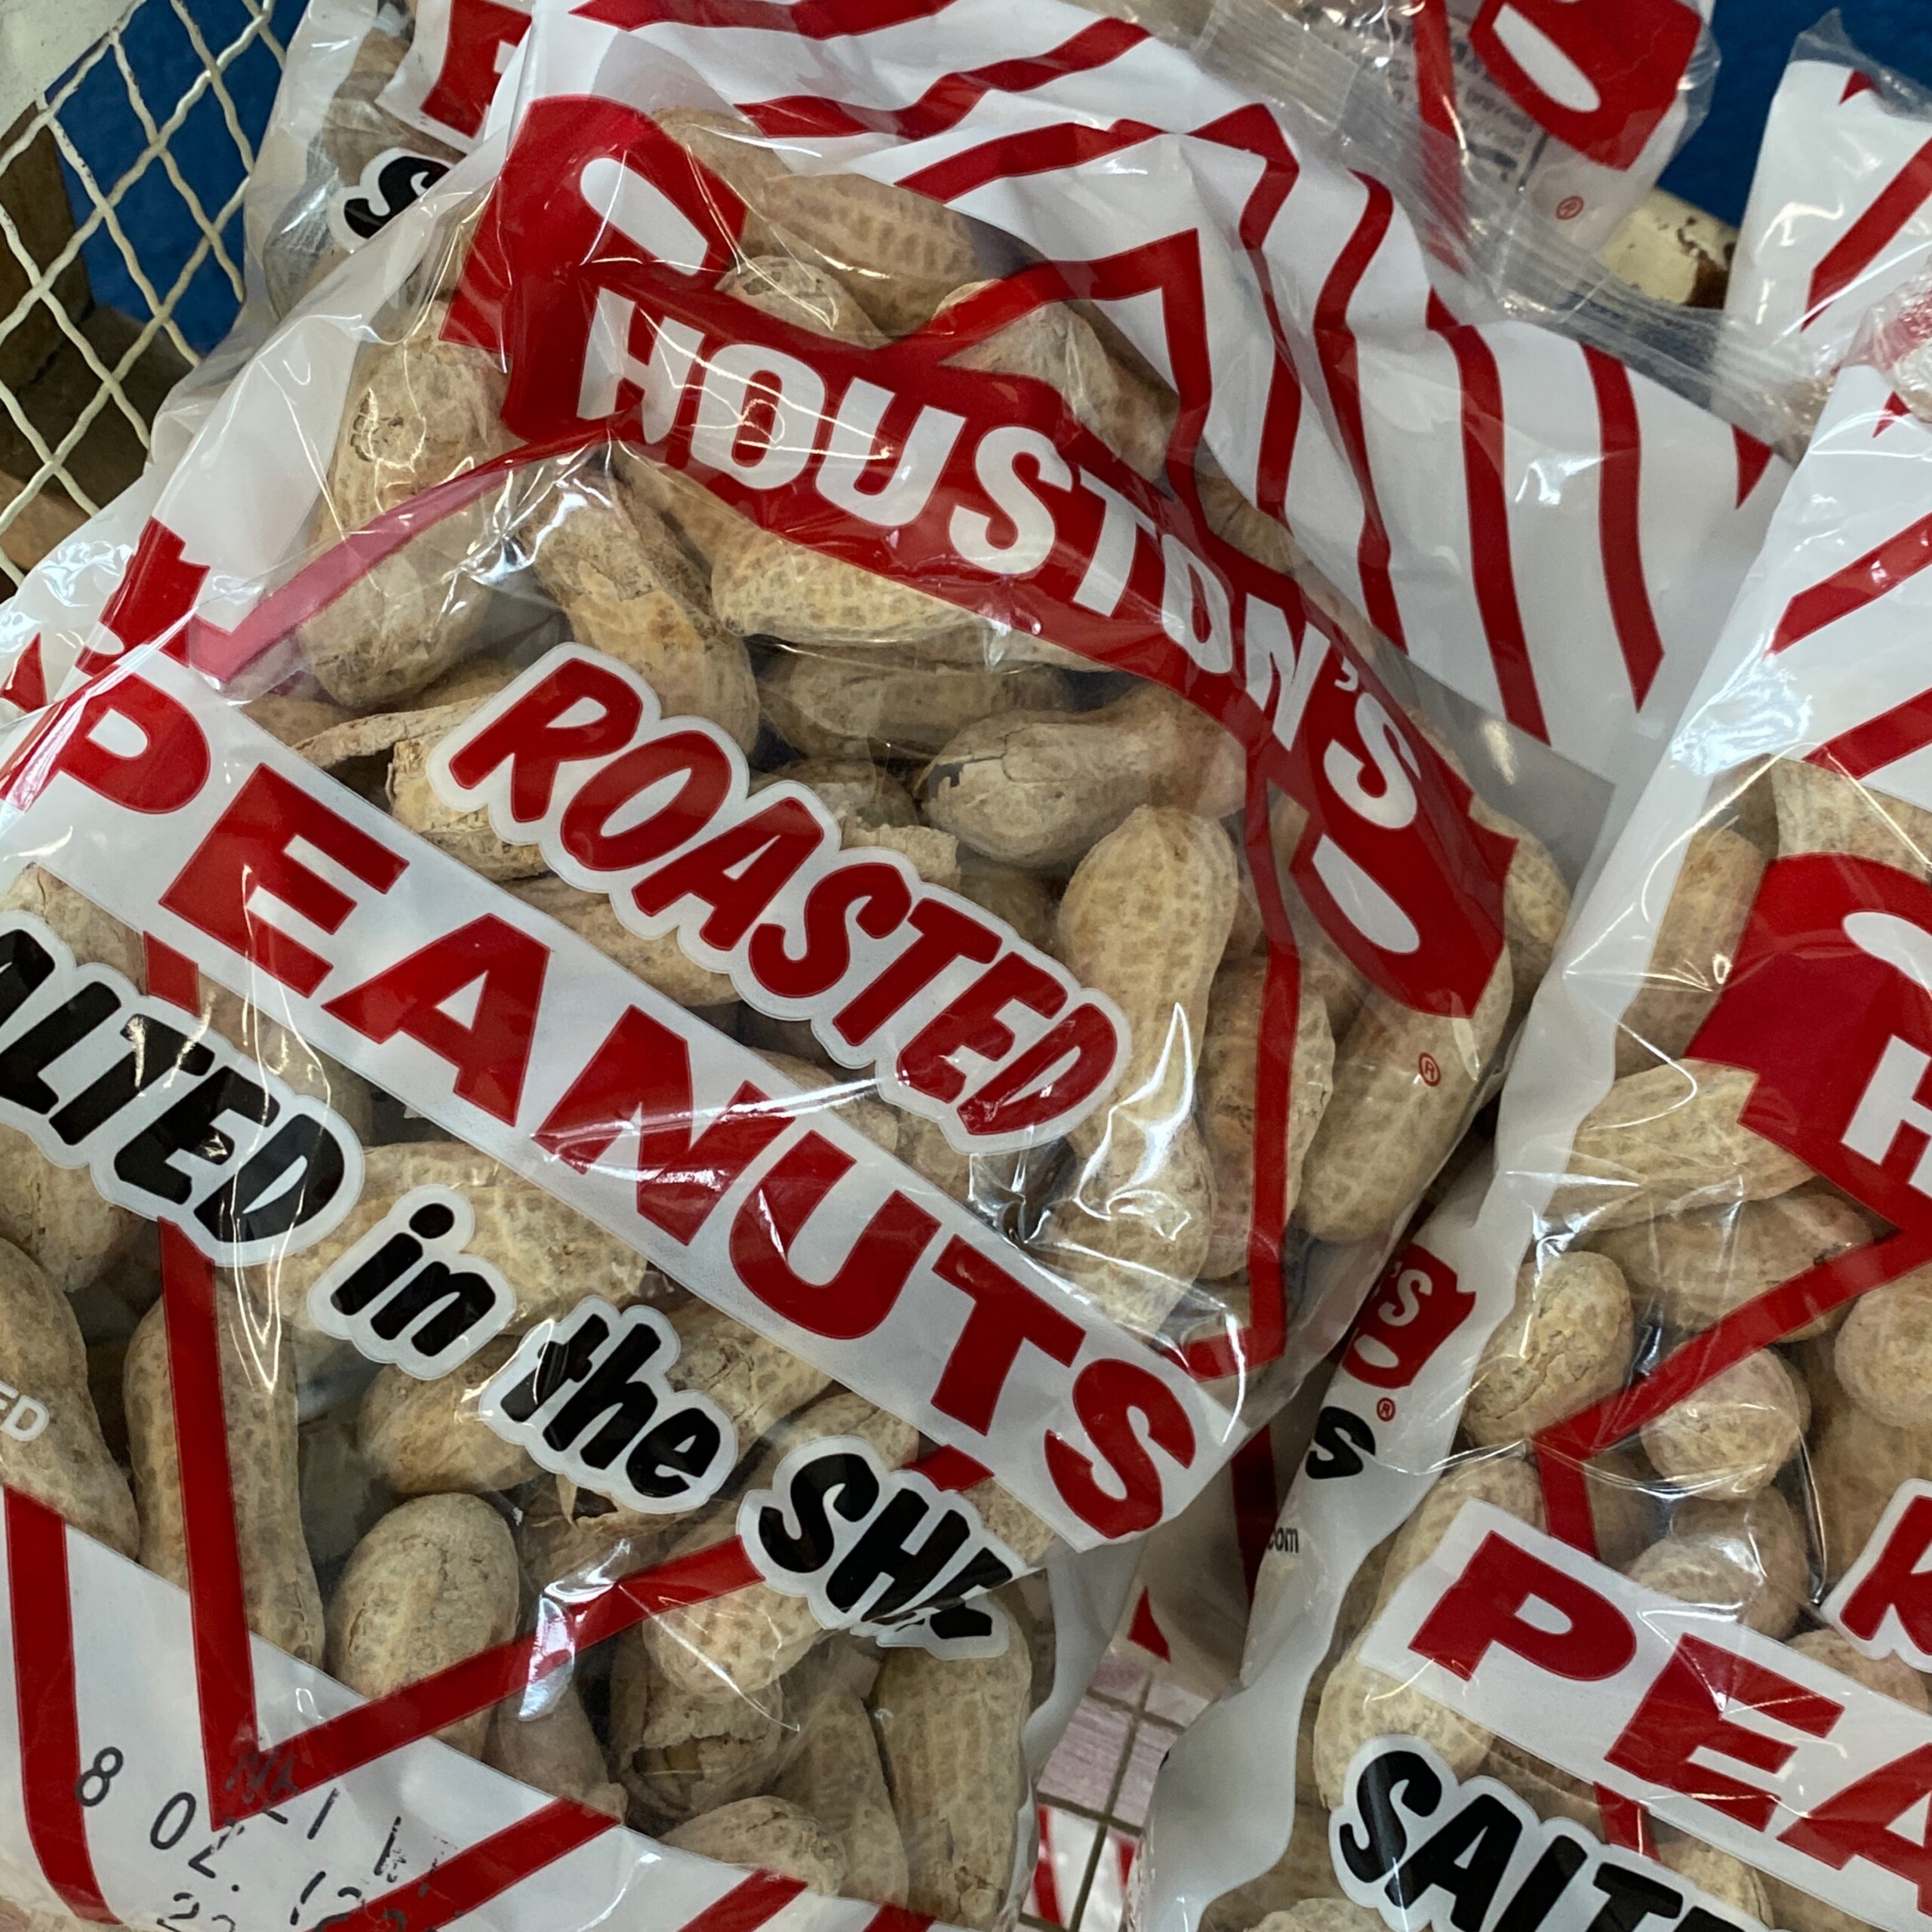 Houston’s Roasted Peanuts Salted 8 oz